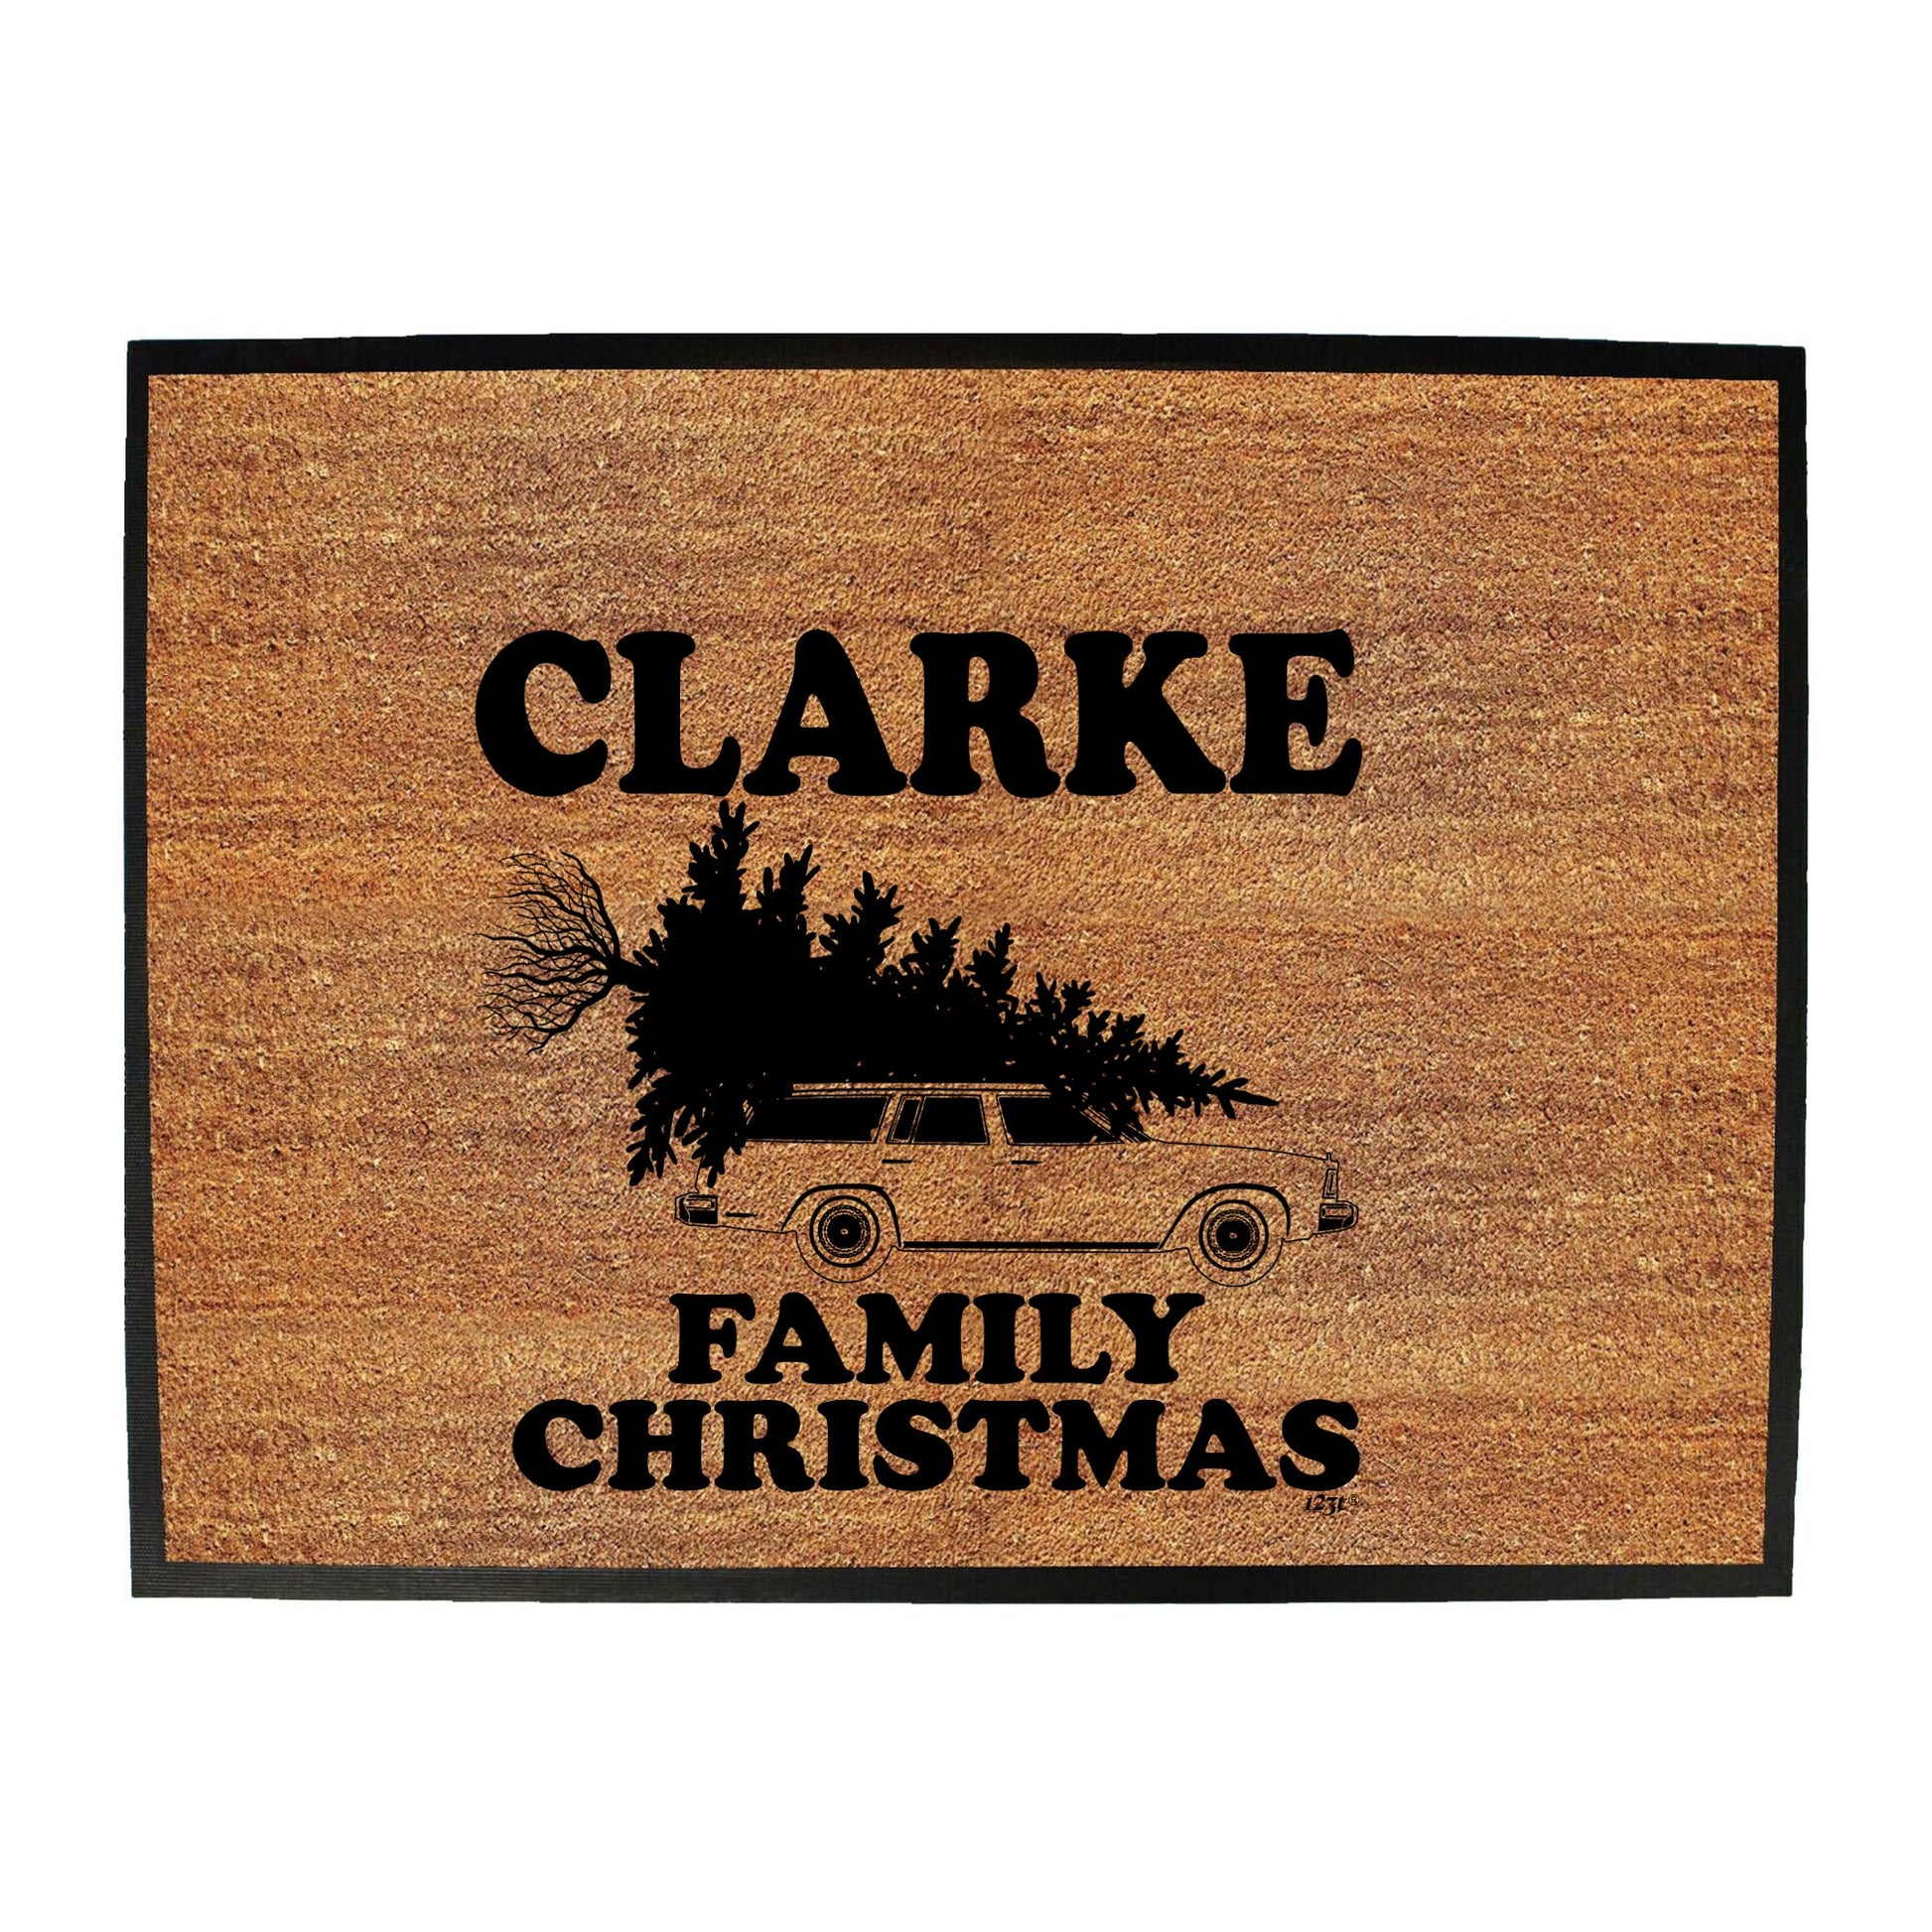 Family Christmas Clarke - Funny Novelty Doormat